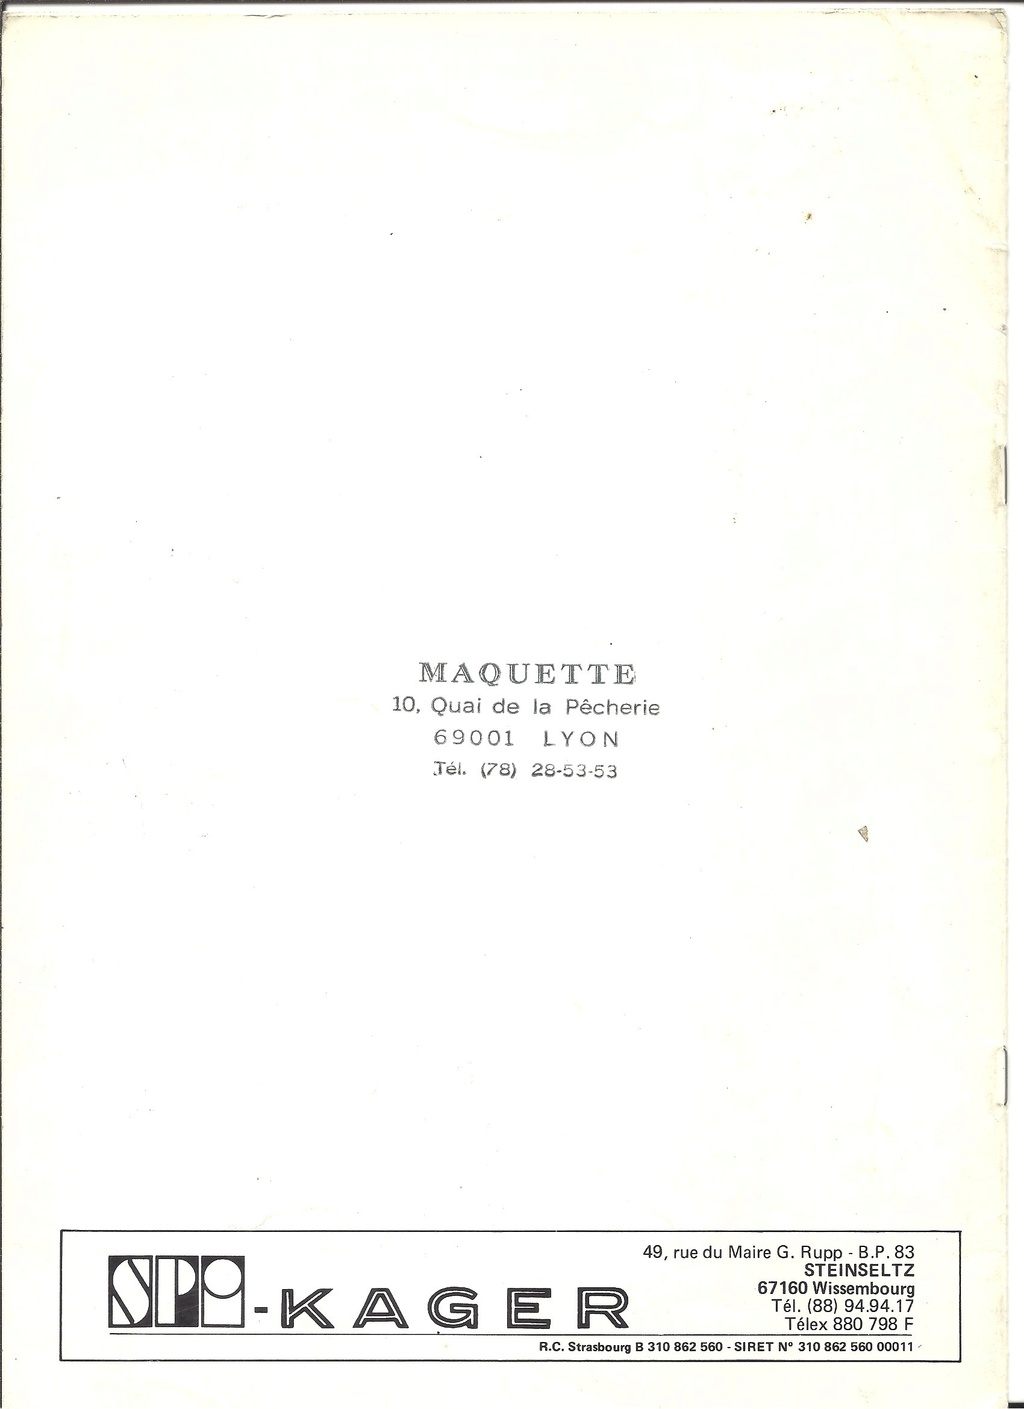 [SPI KAGER 1984] Catalogue AMT/ETRL 1984 Spi_ka77